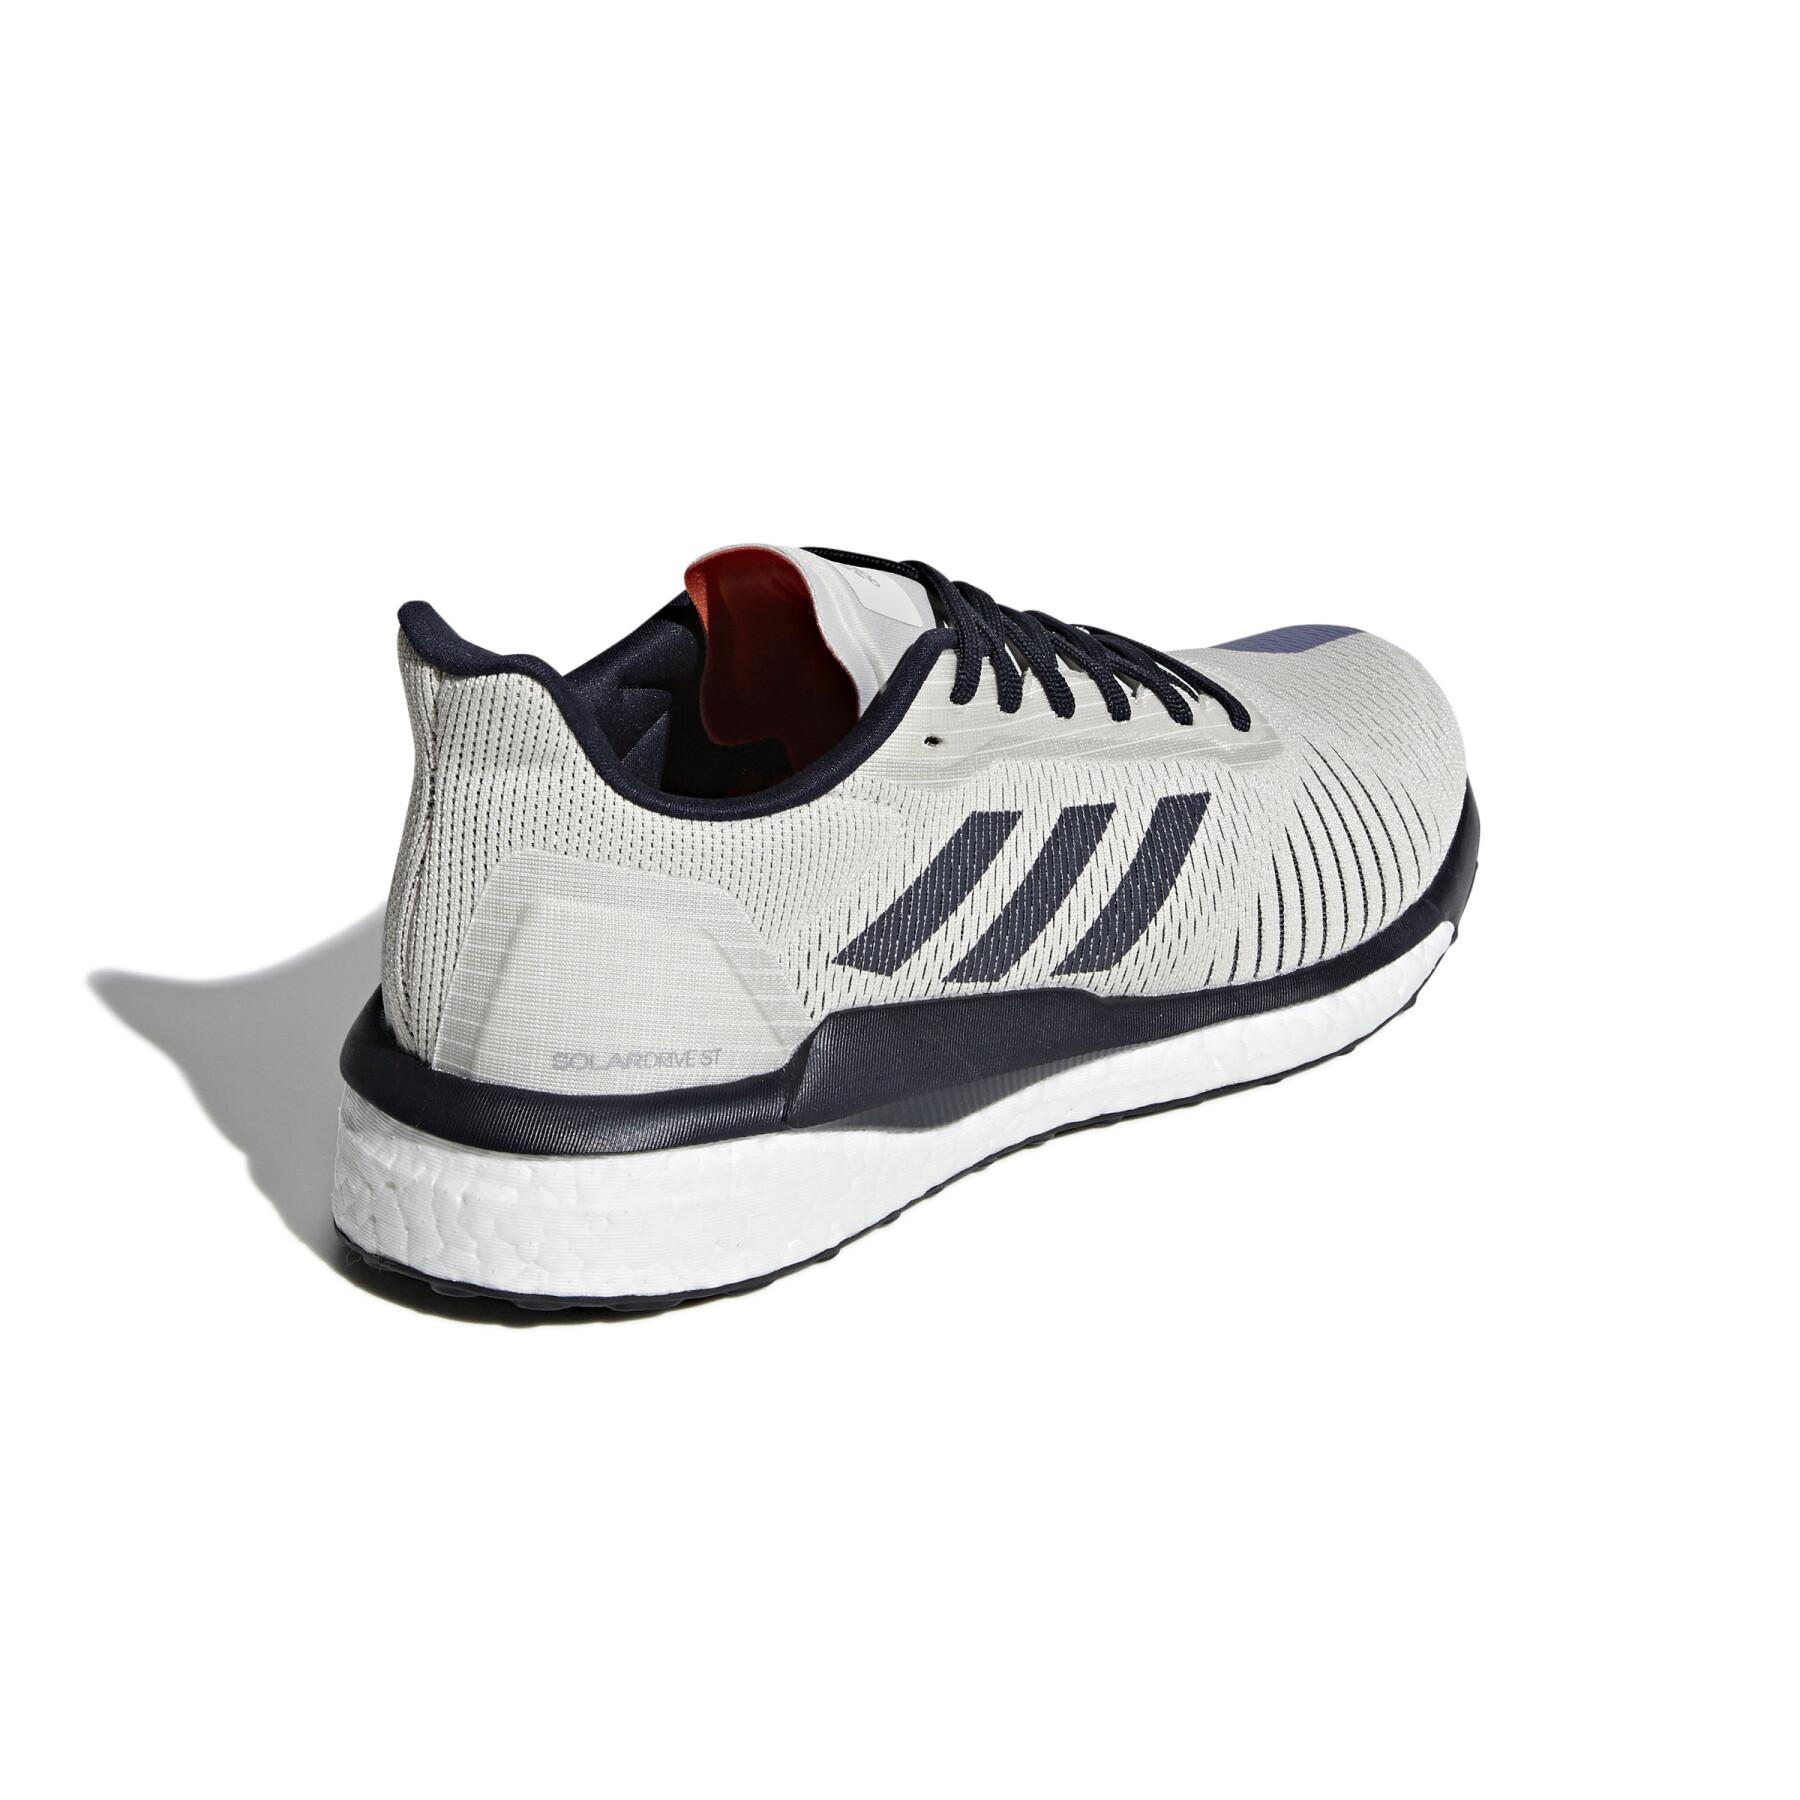 Chaussures de running adidas Solardrive